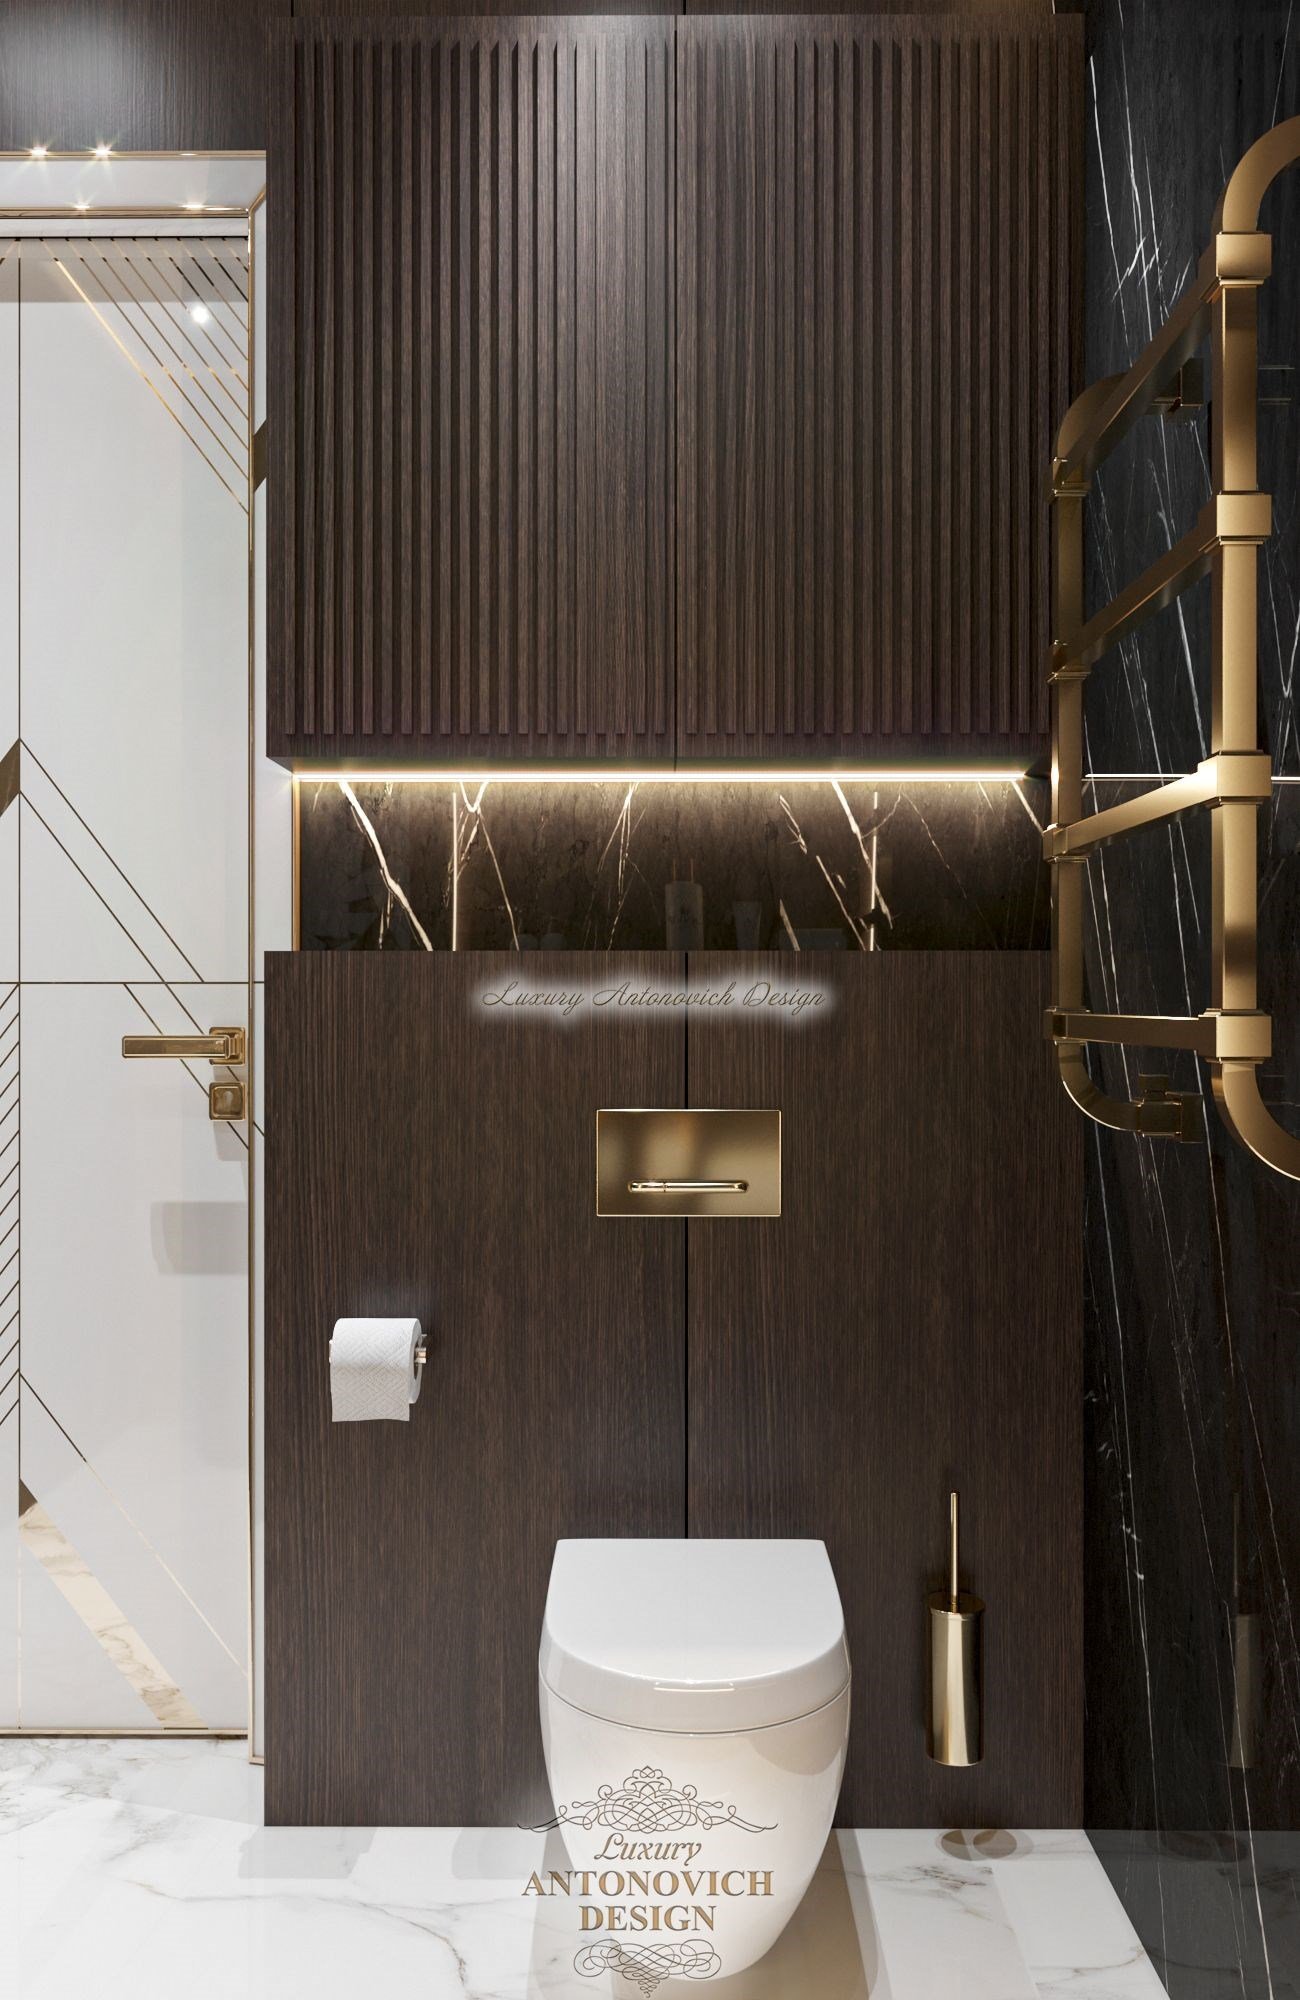 современный дизайн освещения, ванная арт деко, санузел в стиле можерн